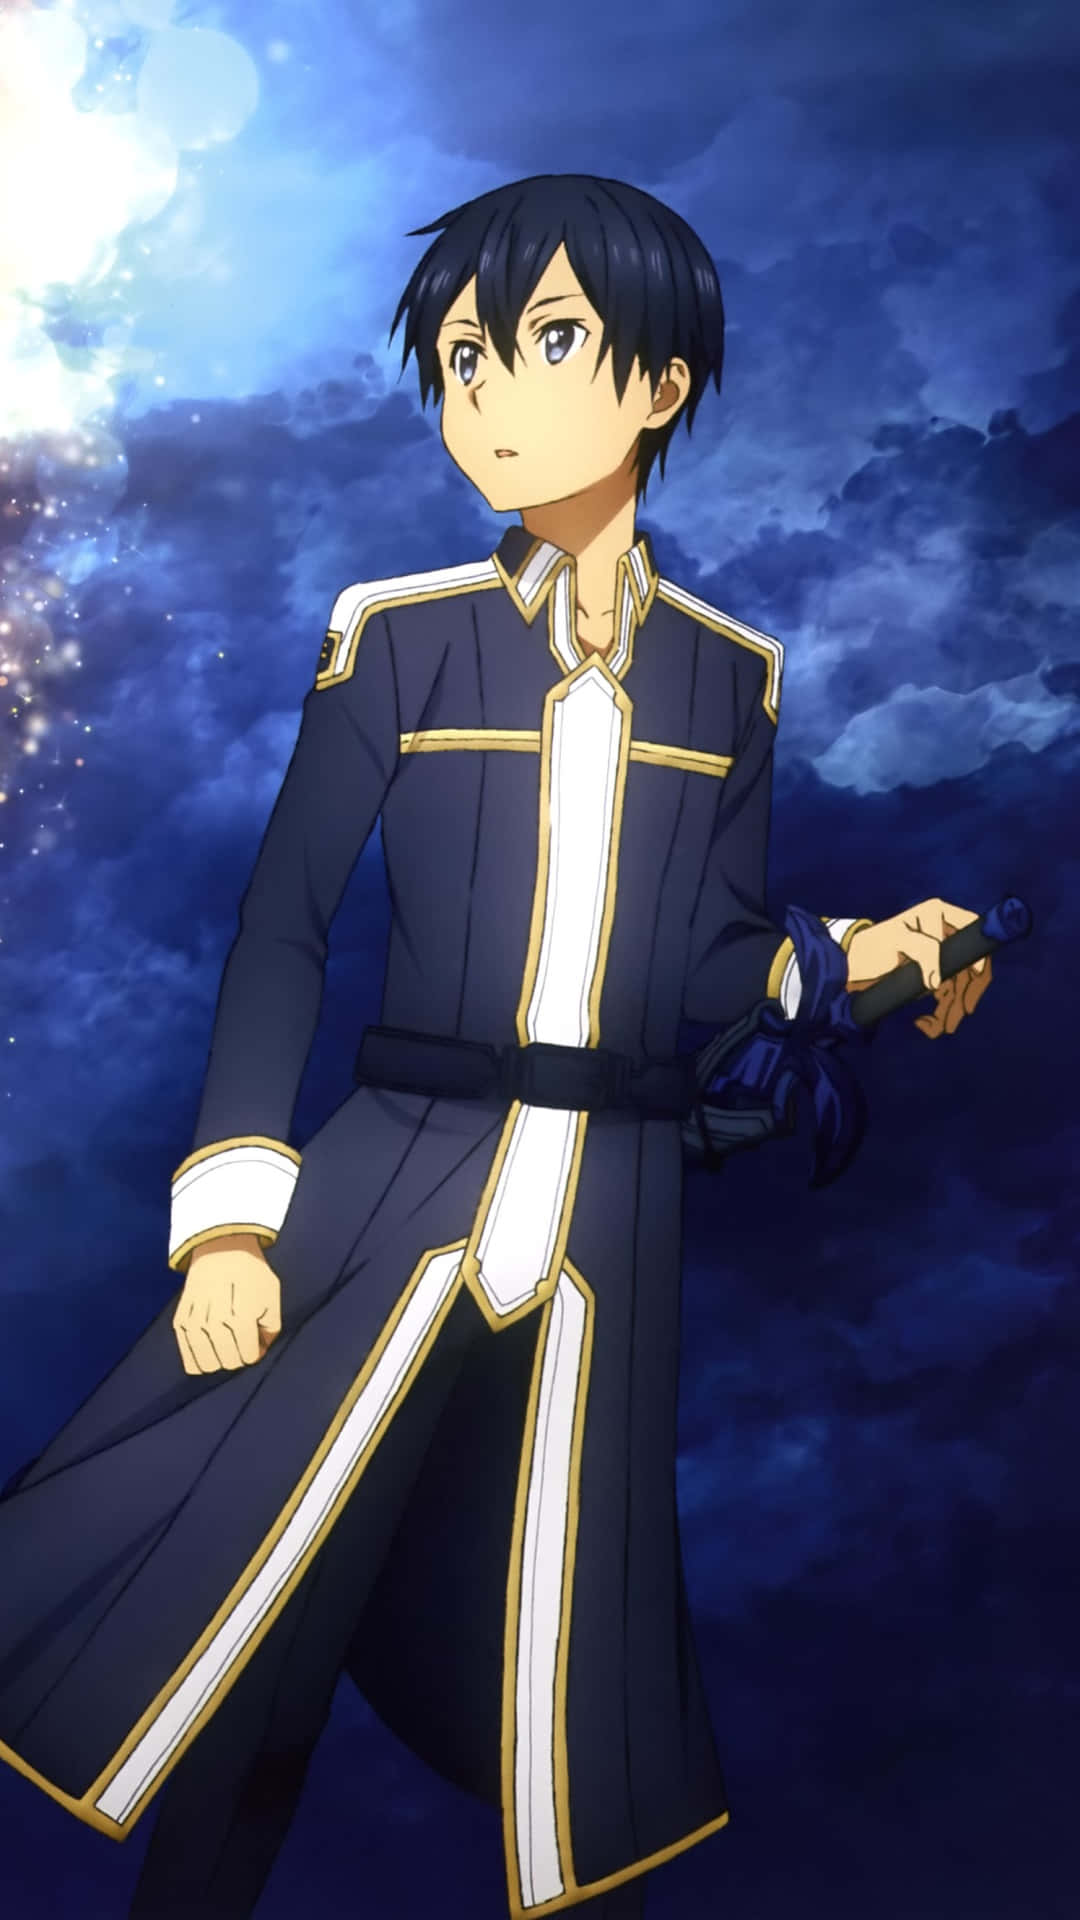 Kazutokirigaya, También Conocido Como Kirito, Sosteniendo Su Espada En Una Pose Intensa Y Dramática. Fondo de pantalla